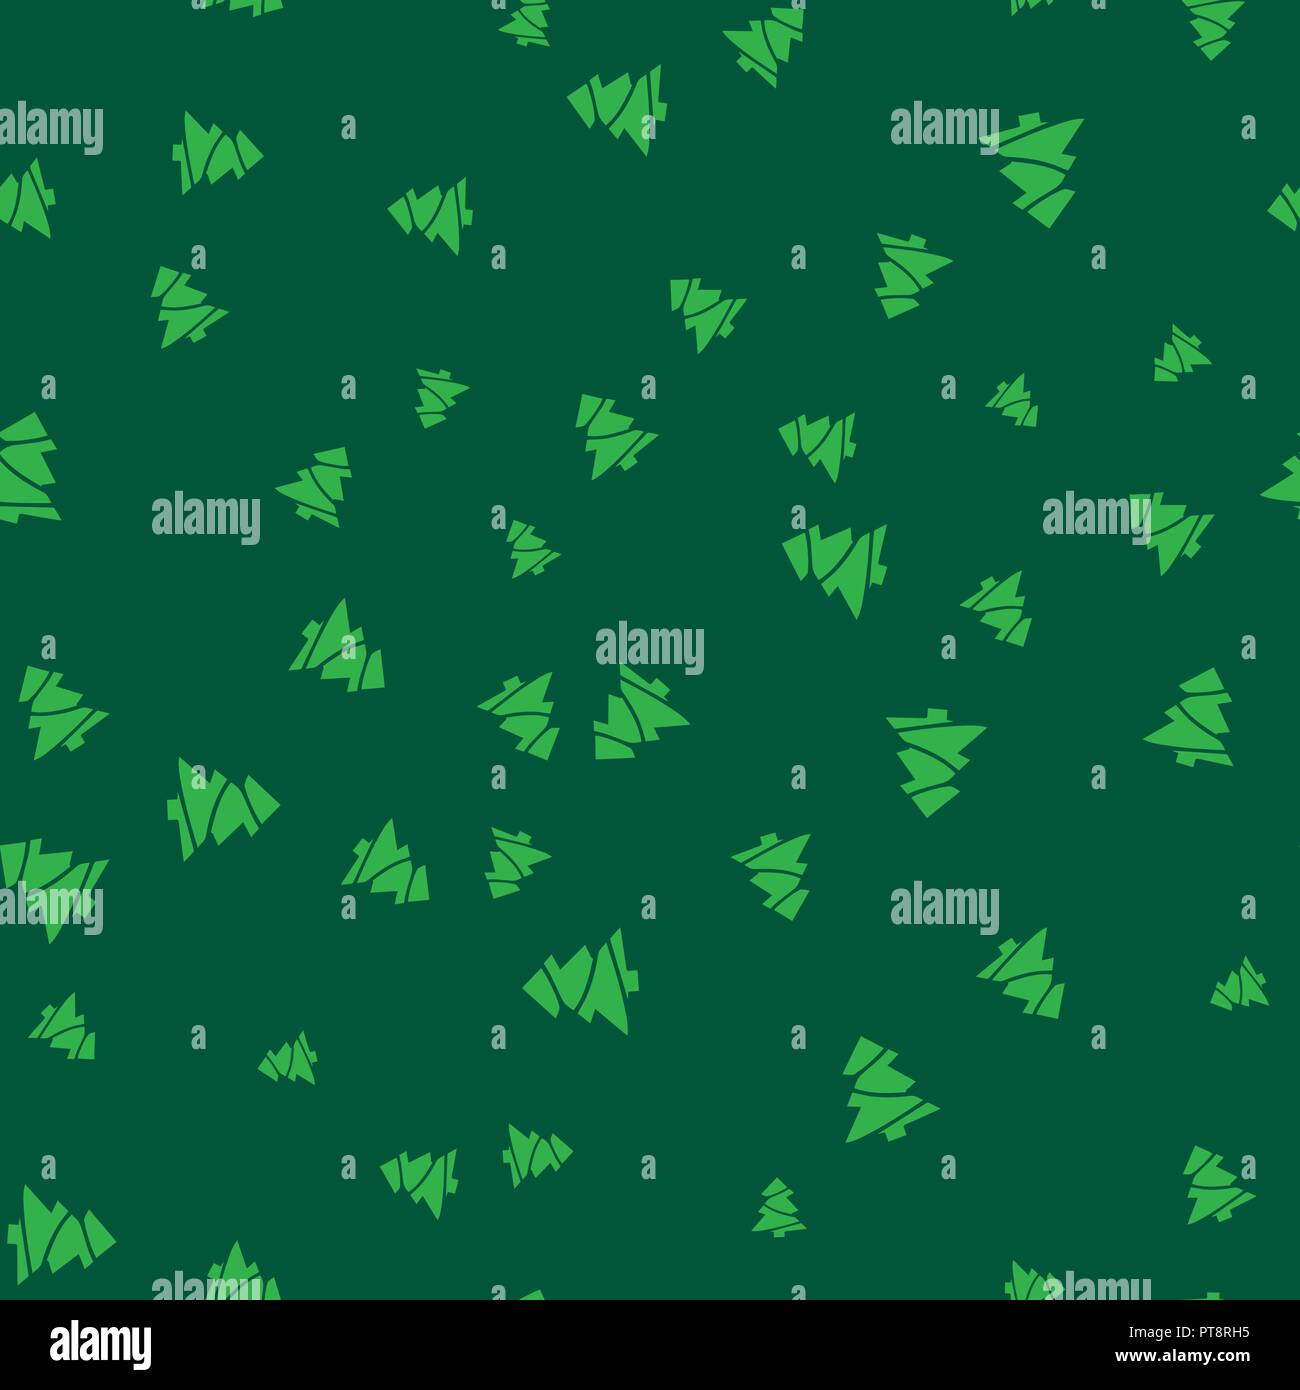 Árbol de Navidad Verde patrón sin fisuras. Fondo verde oscuro. Ilustración vectorial. Ilustración del Vector